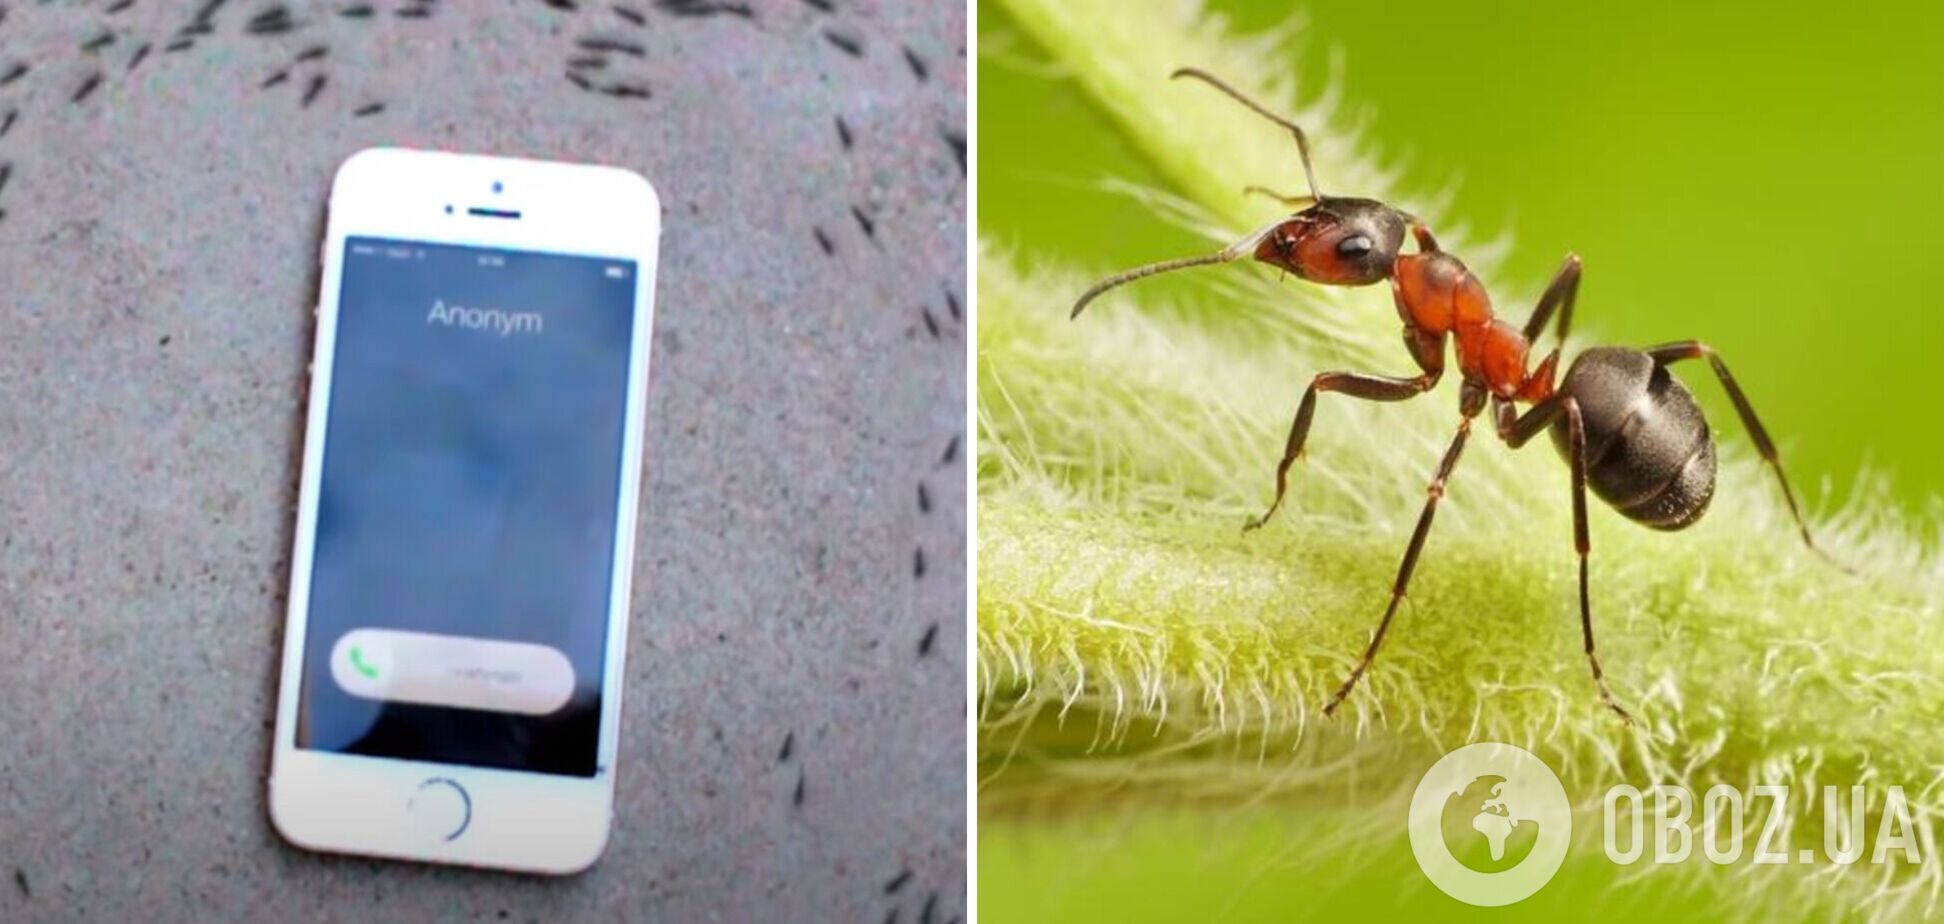 Вчені розповіли, чому мурахи марширують навколо iPhone